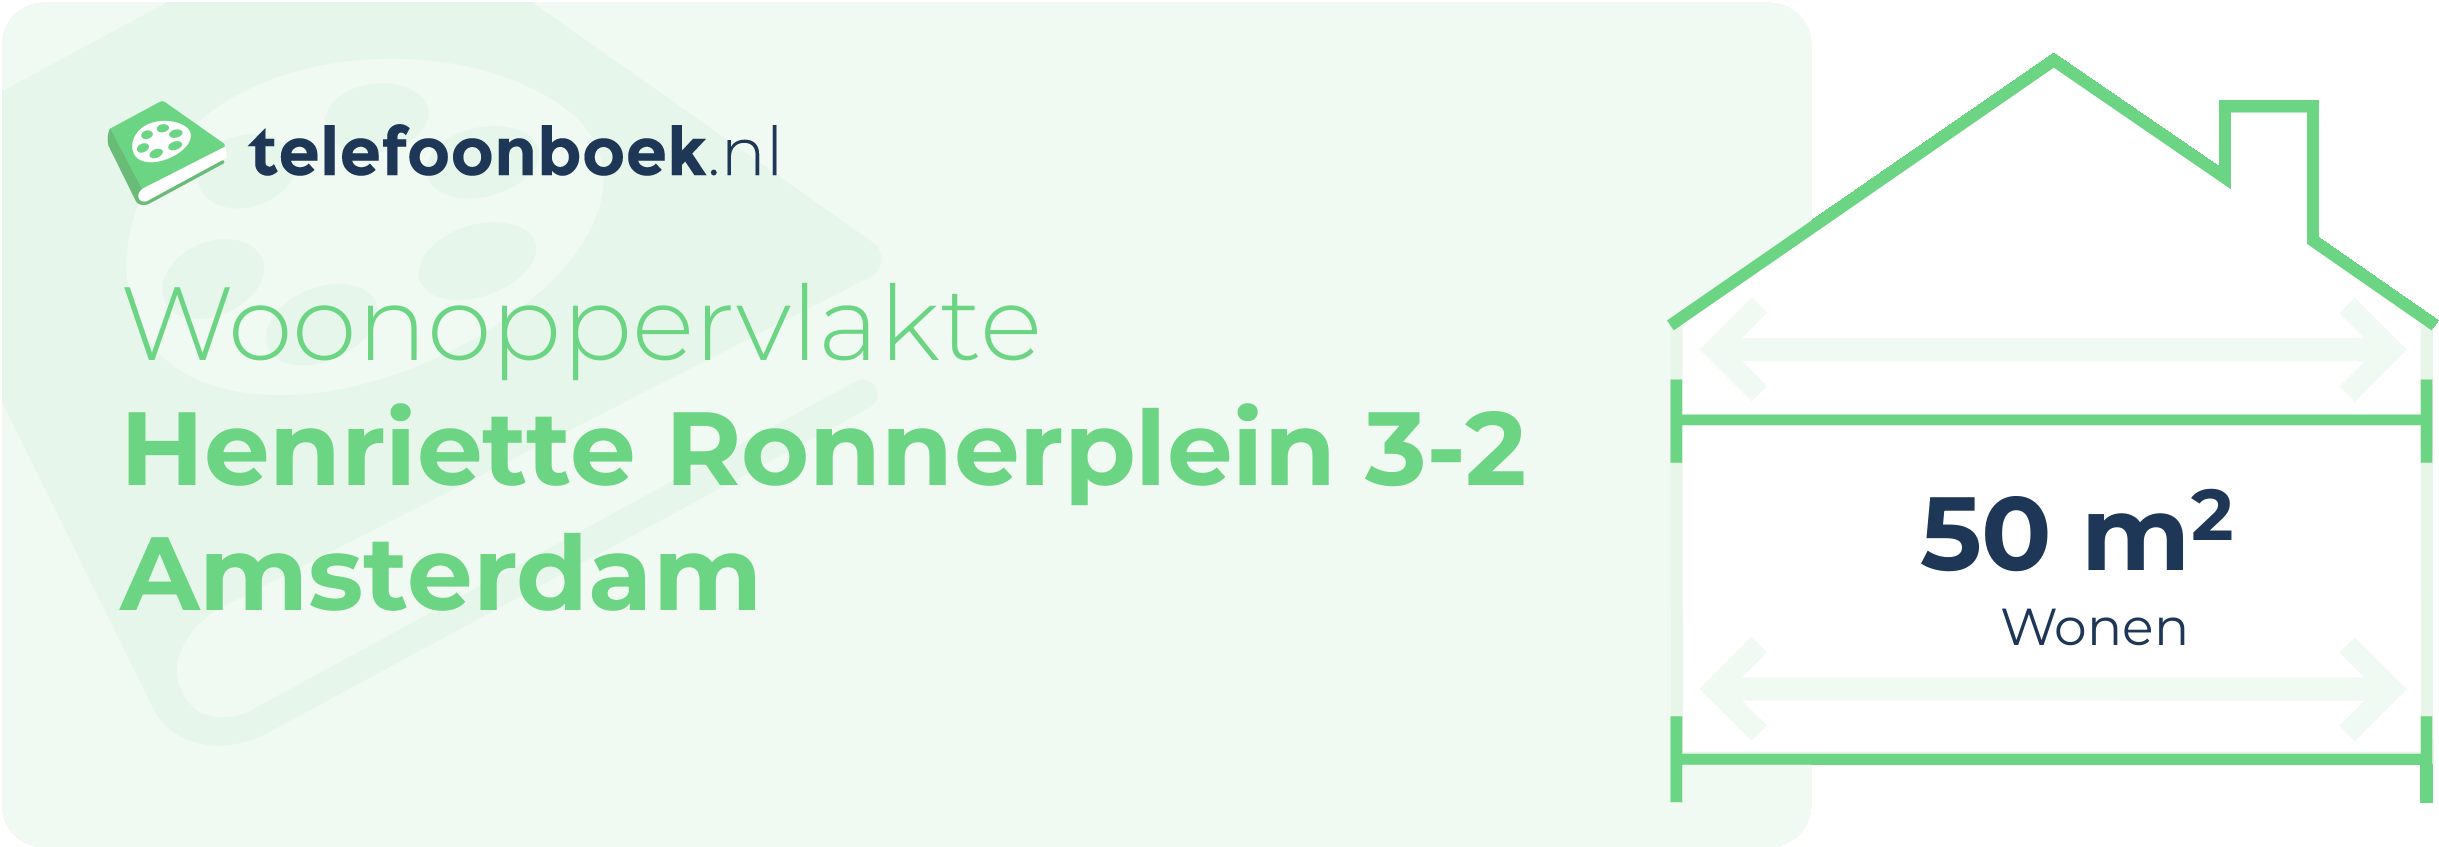 Woonoppervlakte Henriette Ronnerplein 3-2 Amsterdam